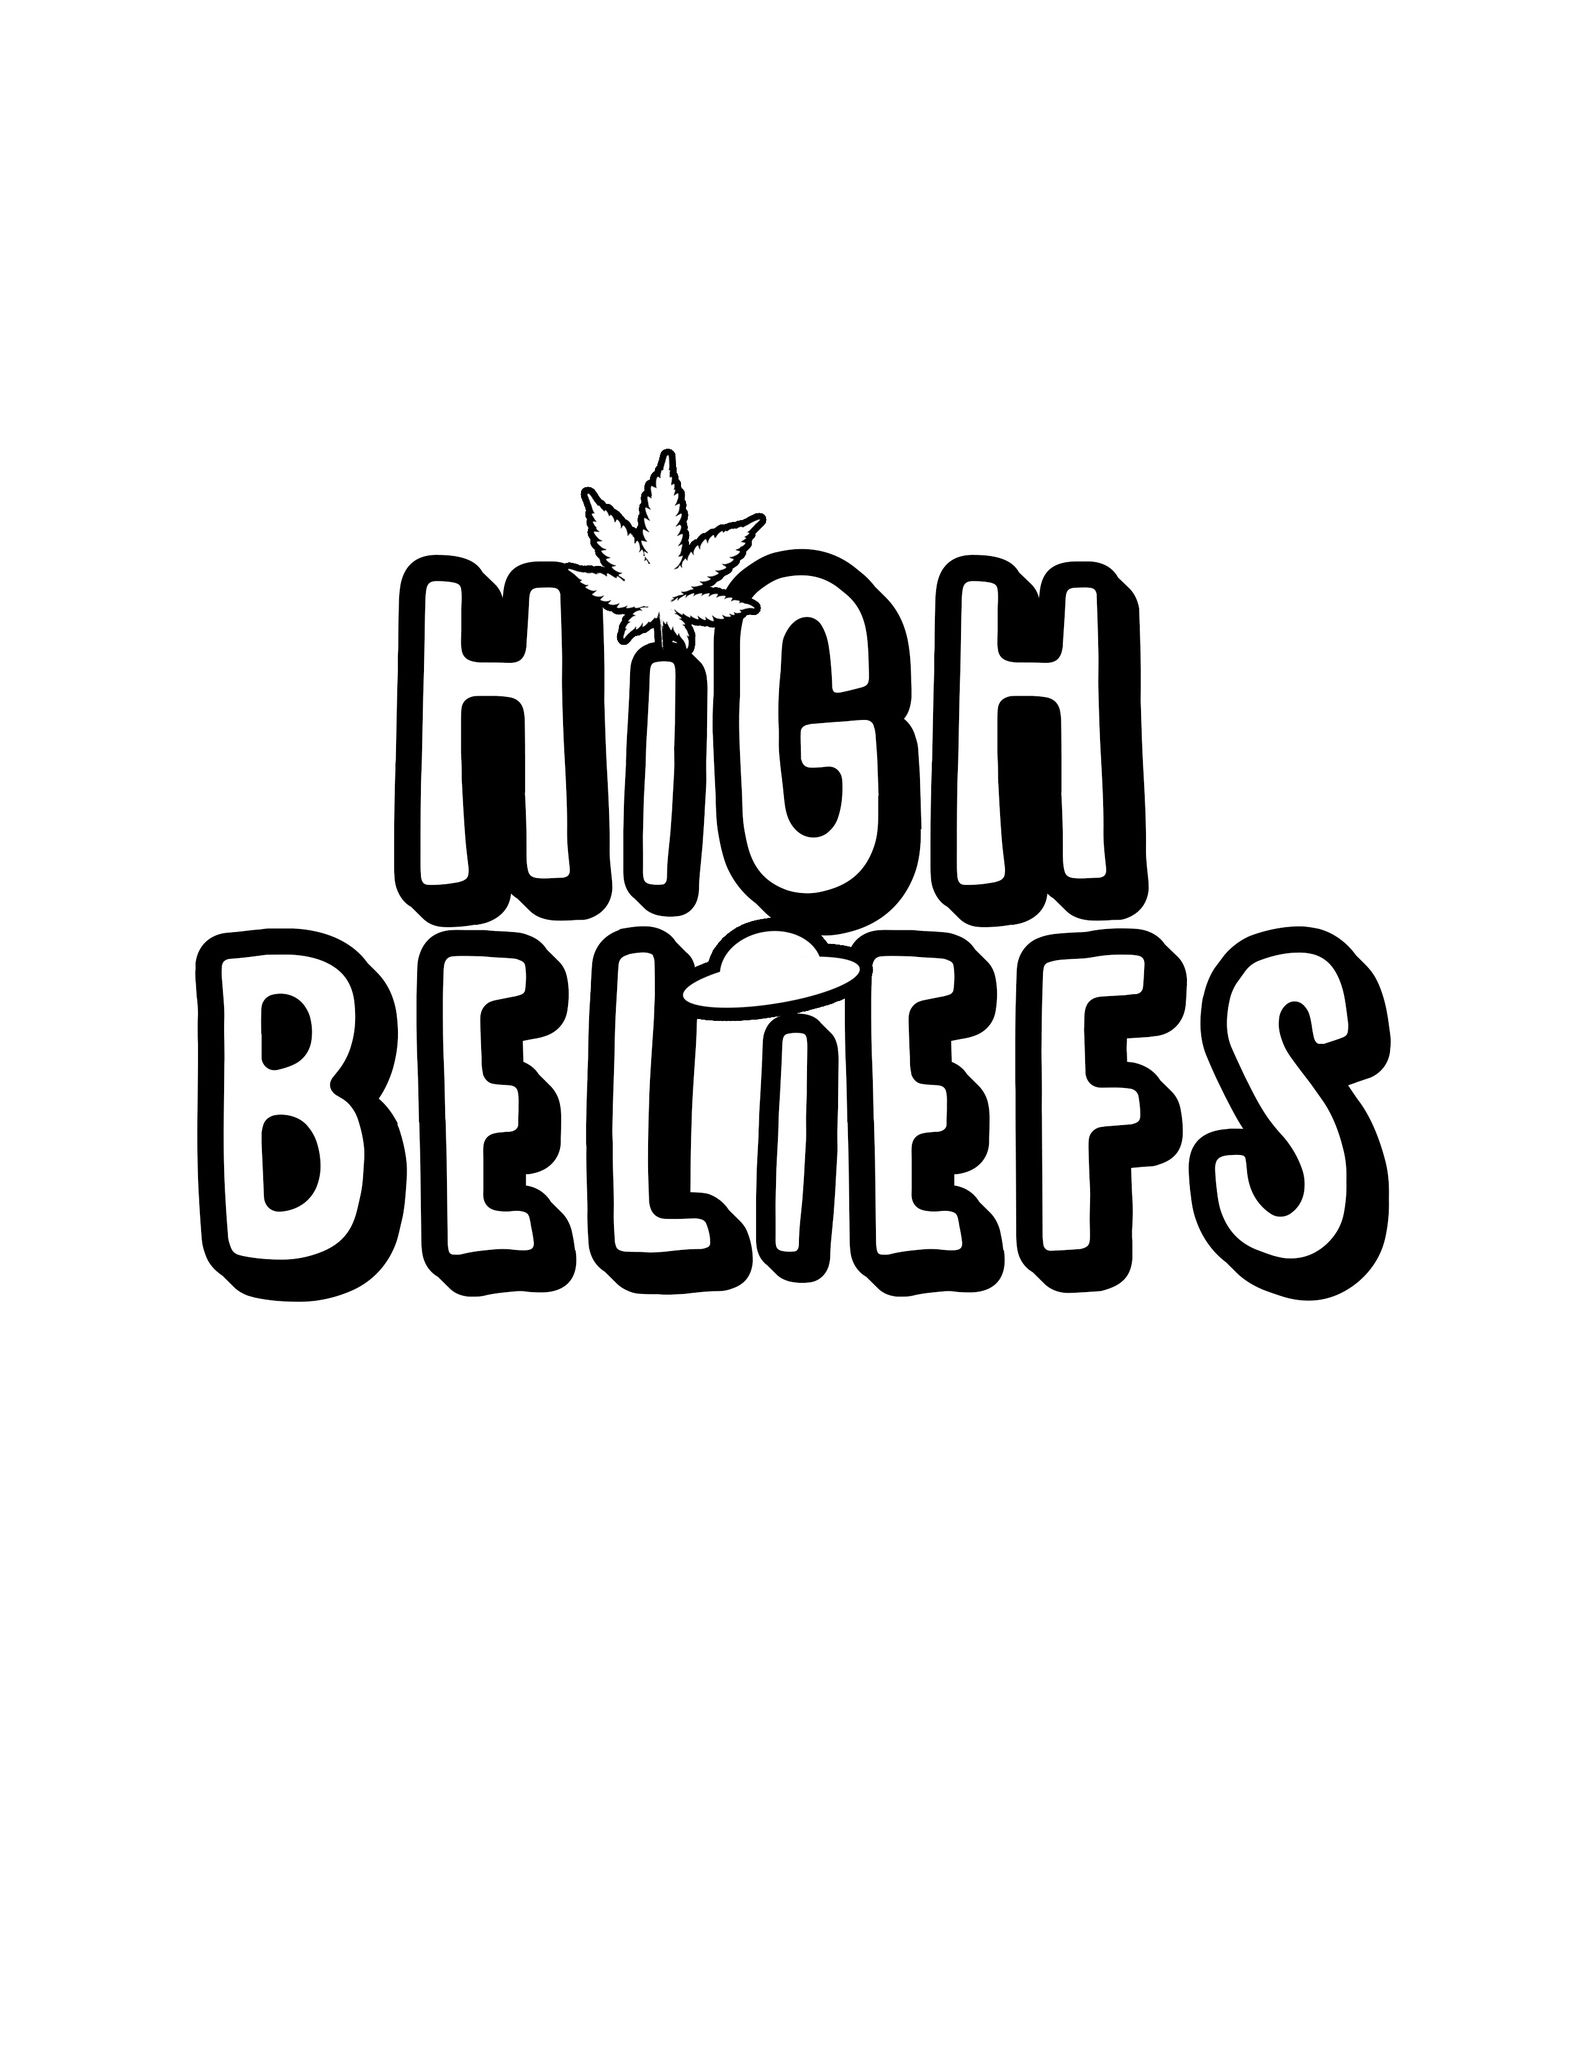 HIGH BELIEFS 